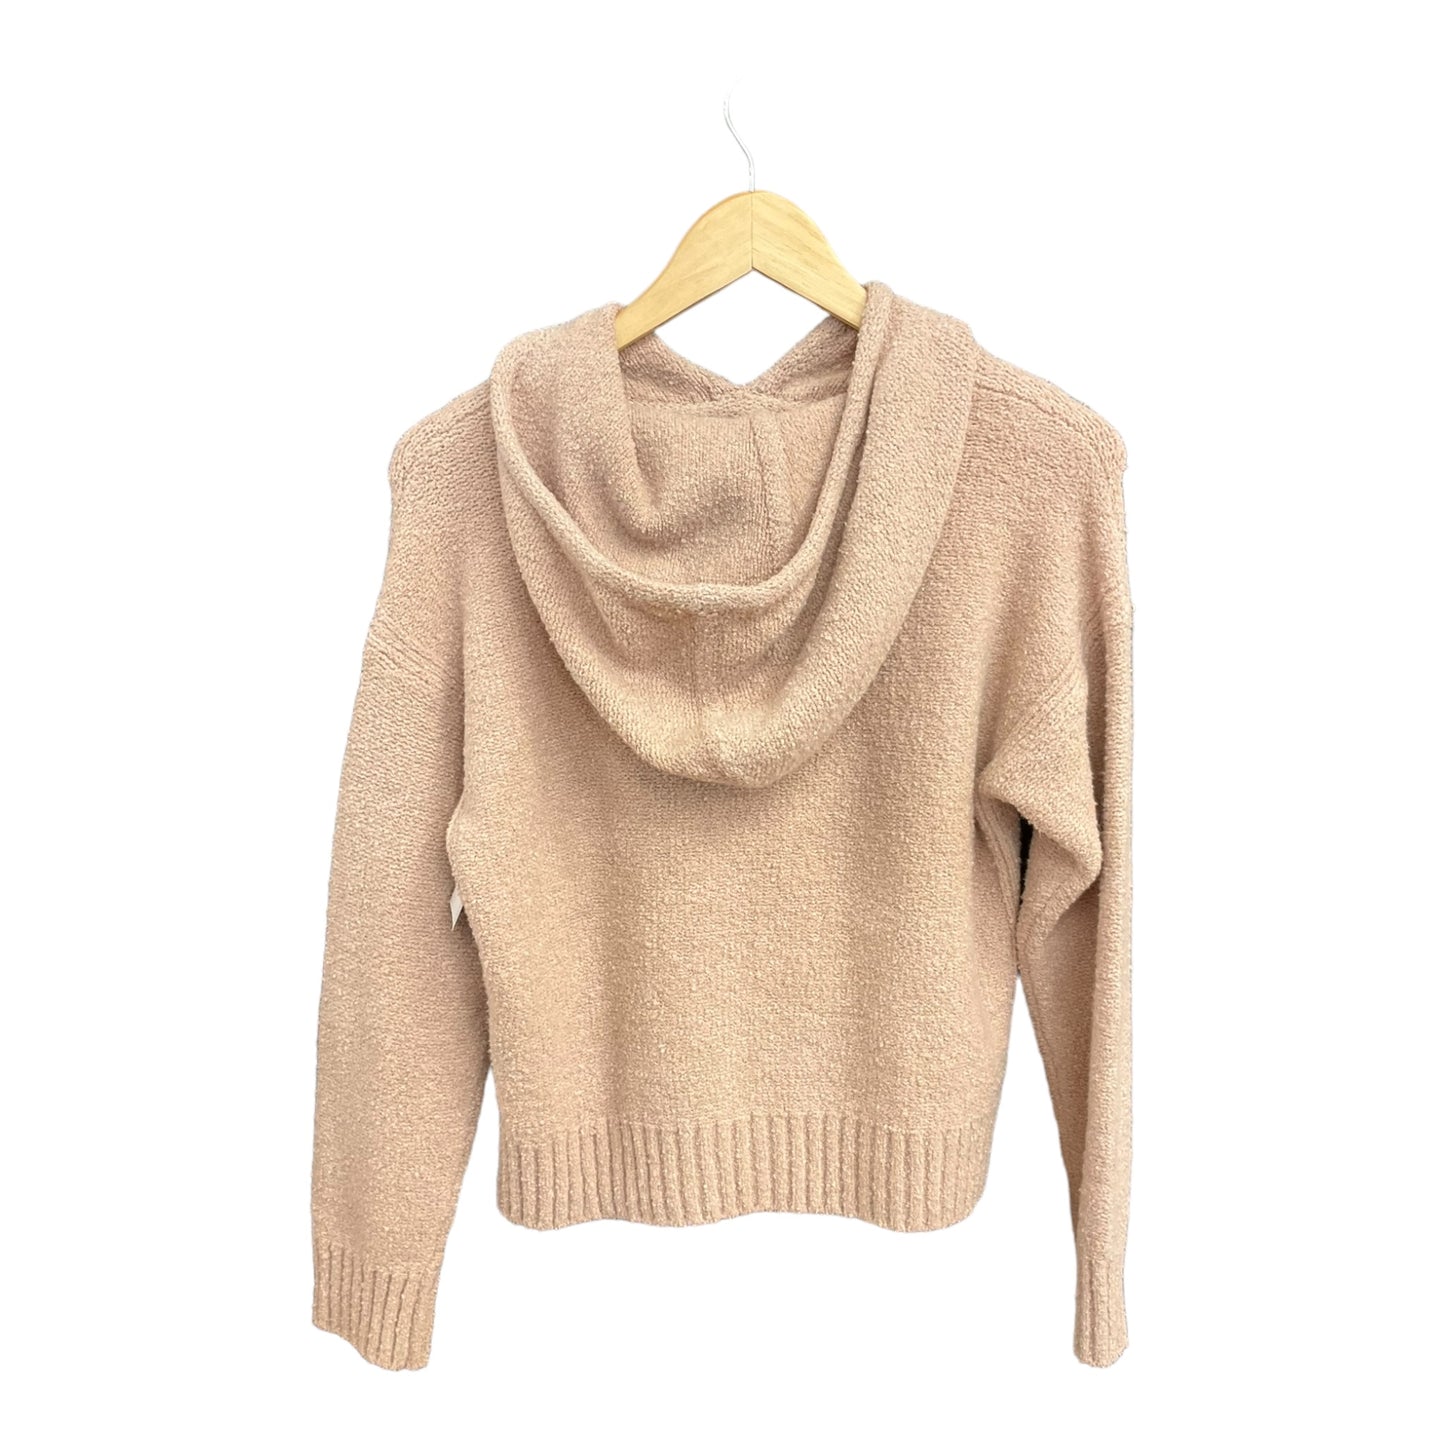 Sweater By Club Monaco  Size: Xs